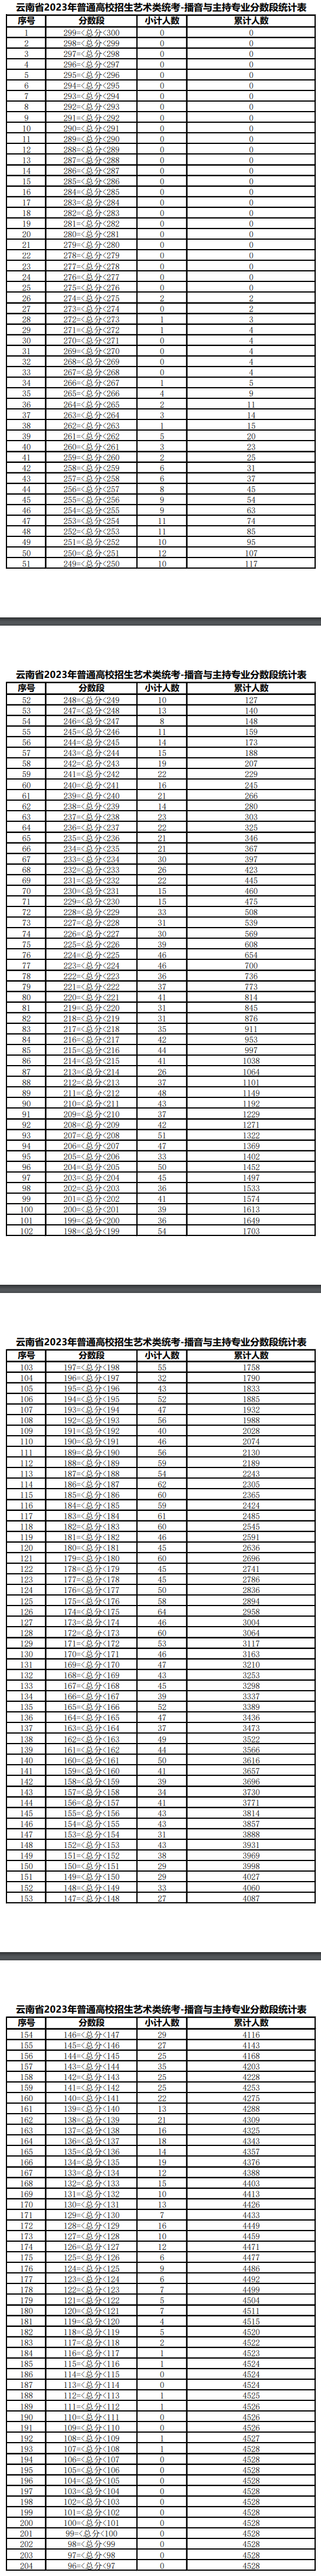 2023云南播音与主持统考分数段统计表 各分段人数